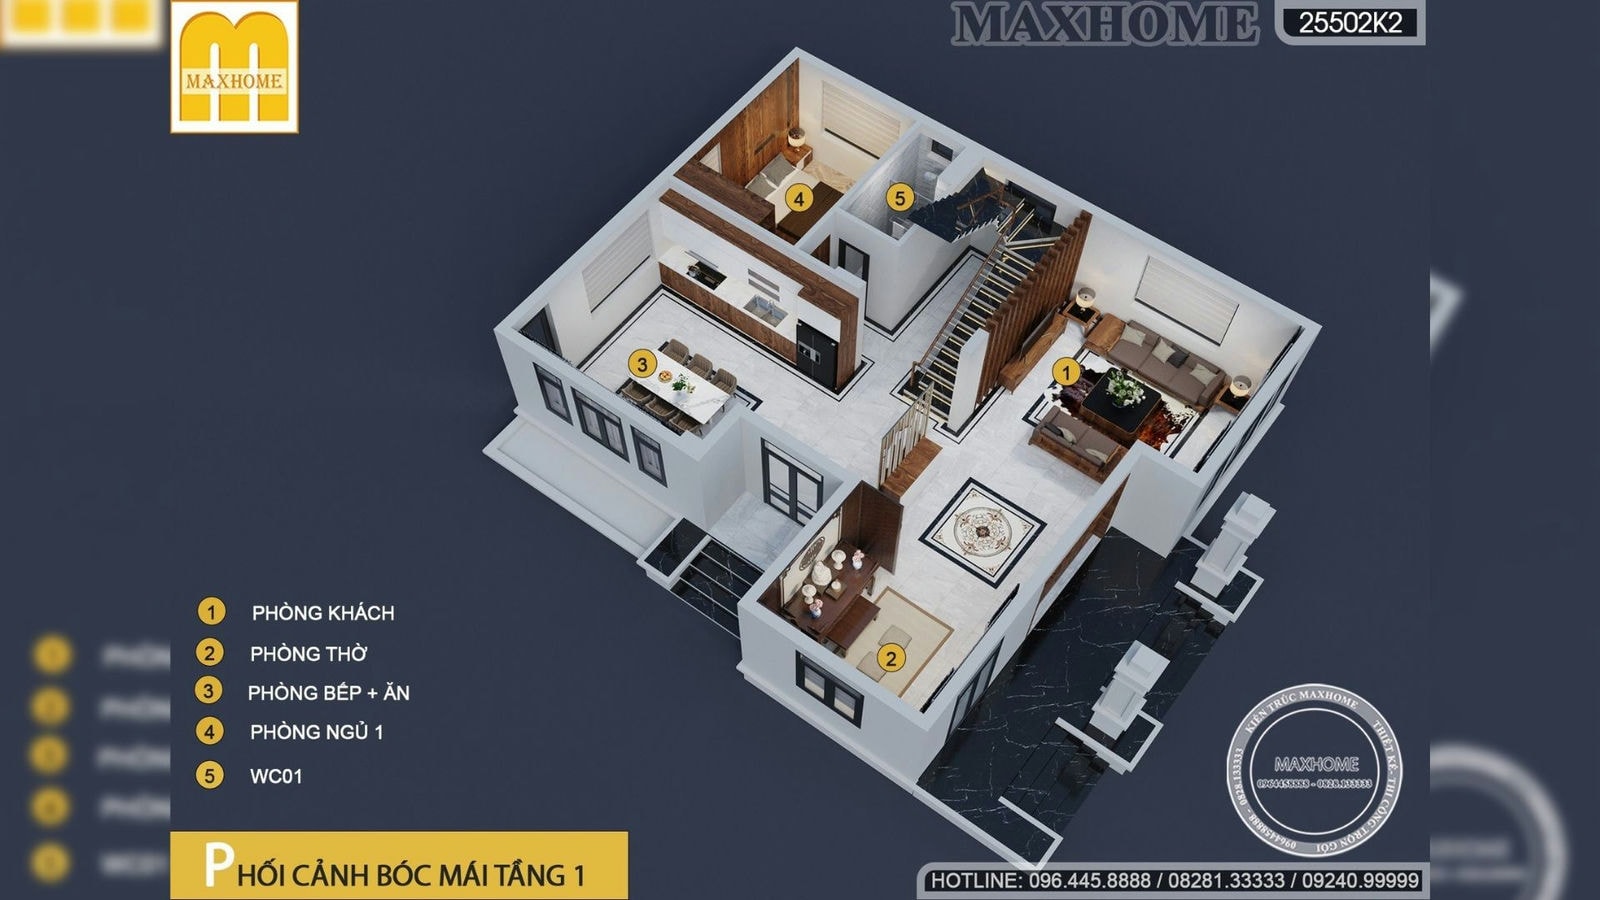 Thiết kế nhà ở 2 tầng đẹp như biệt thự hiện đại giữa TP Hà Nội | MH02338